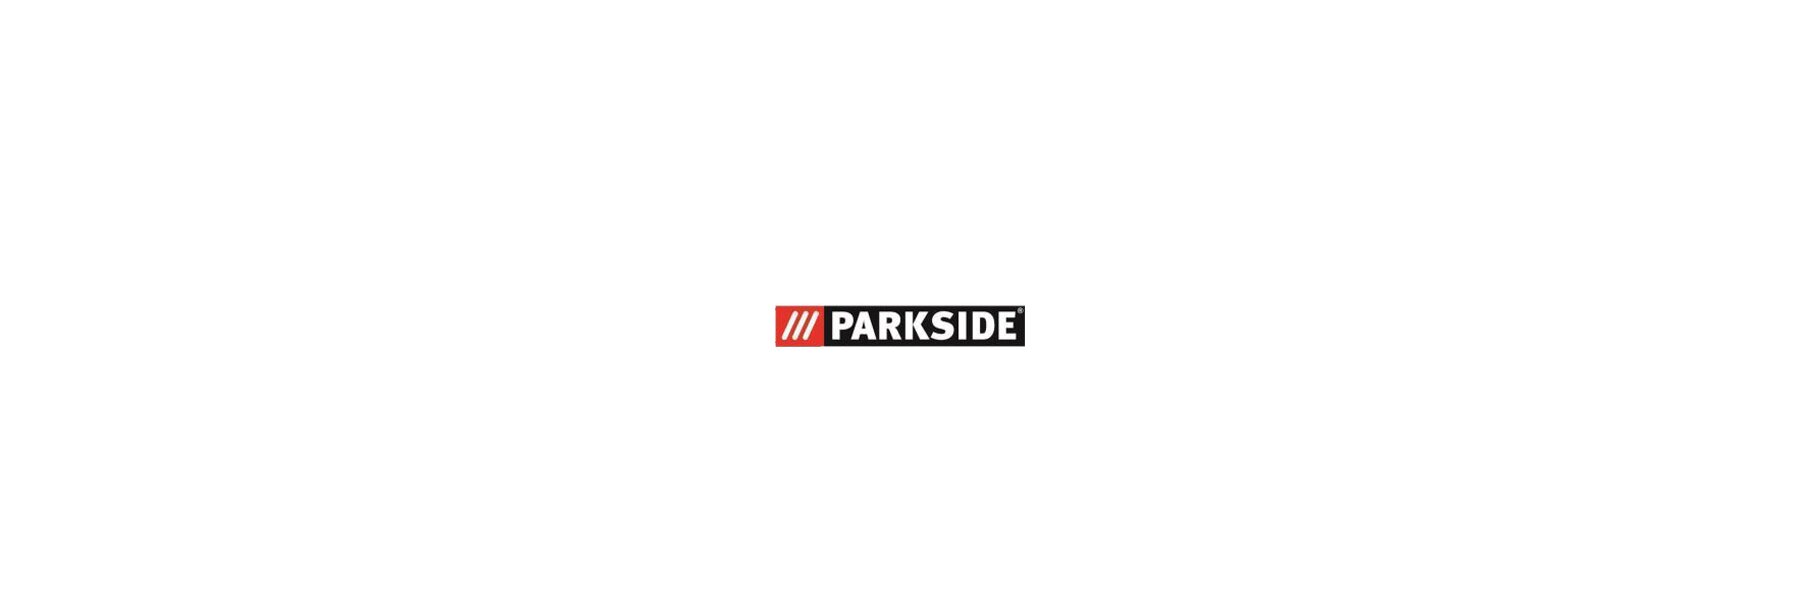 DE Pro PHS 55/5 Parkside